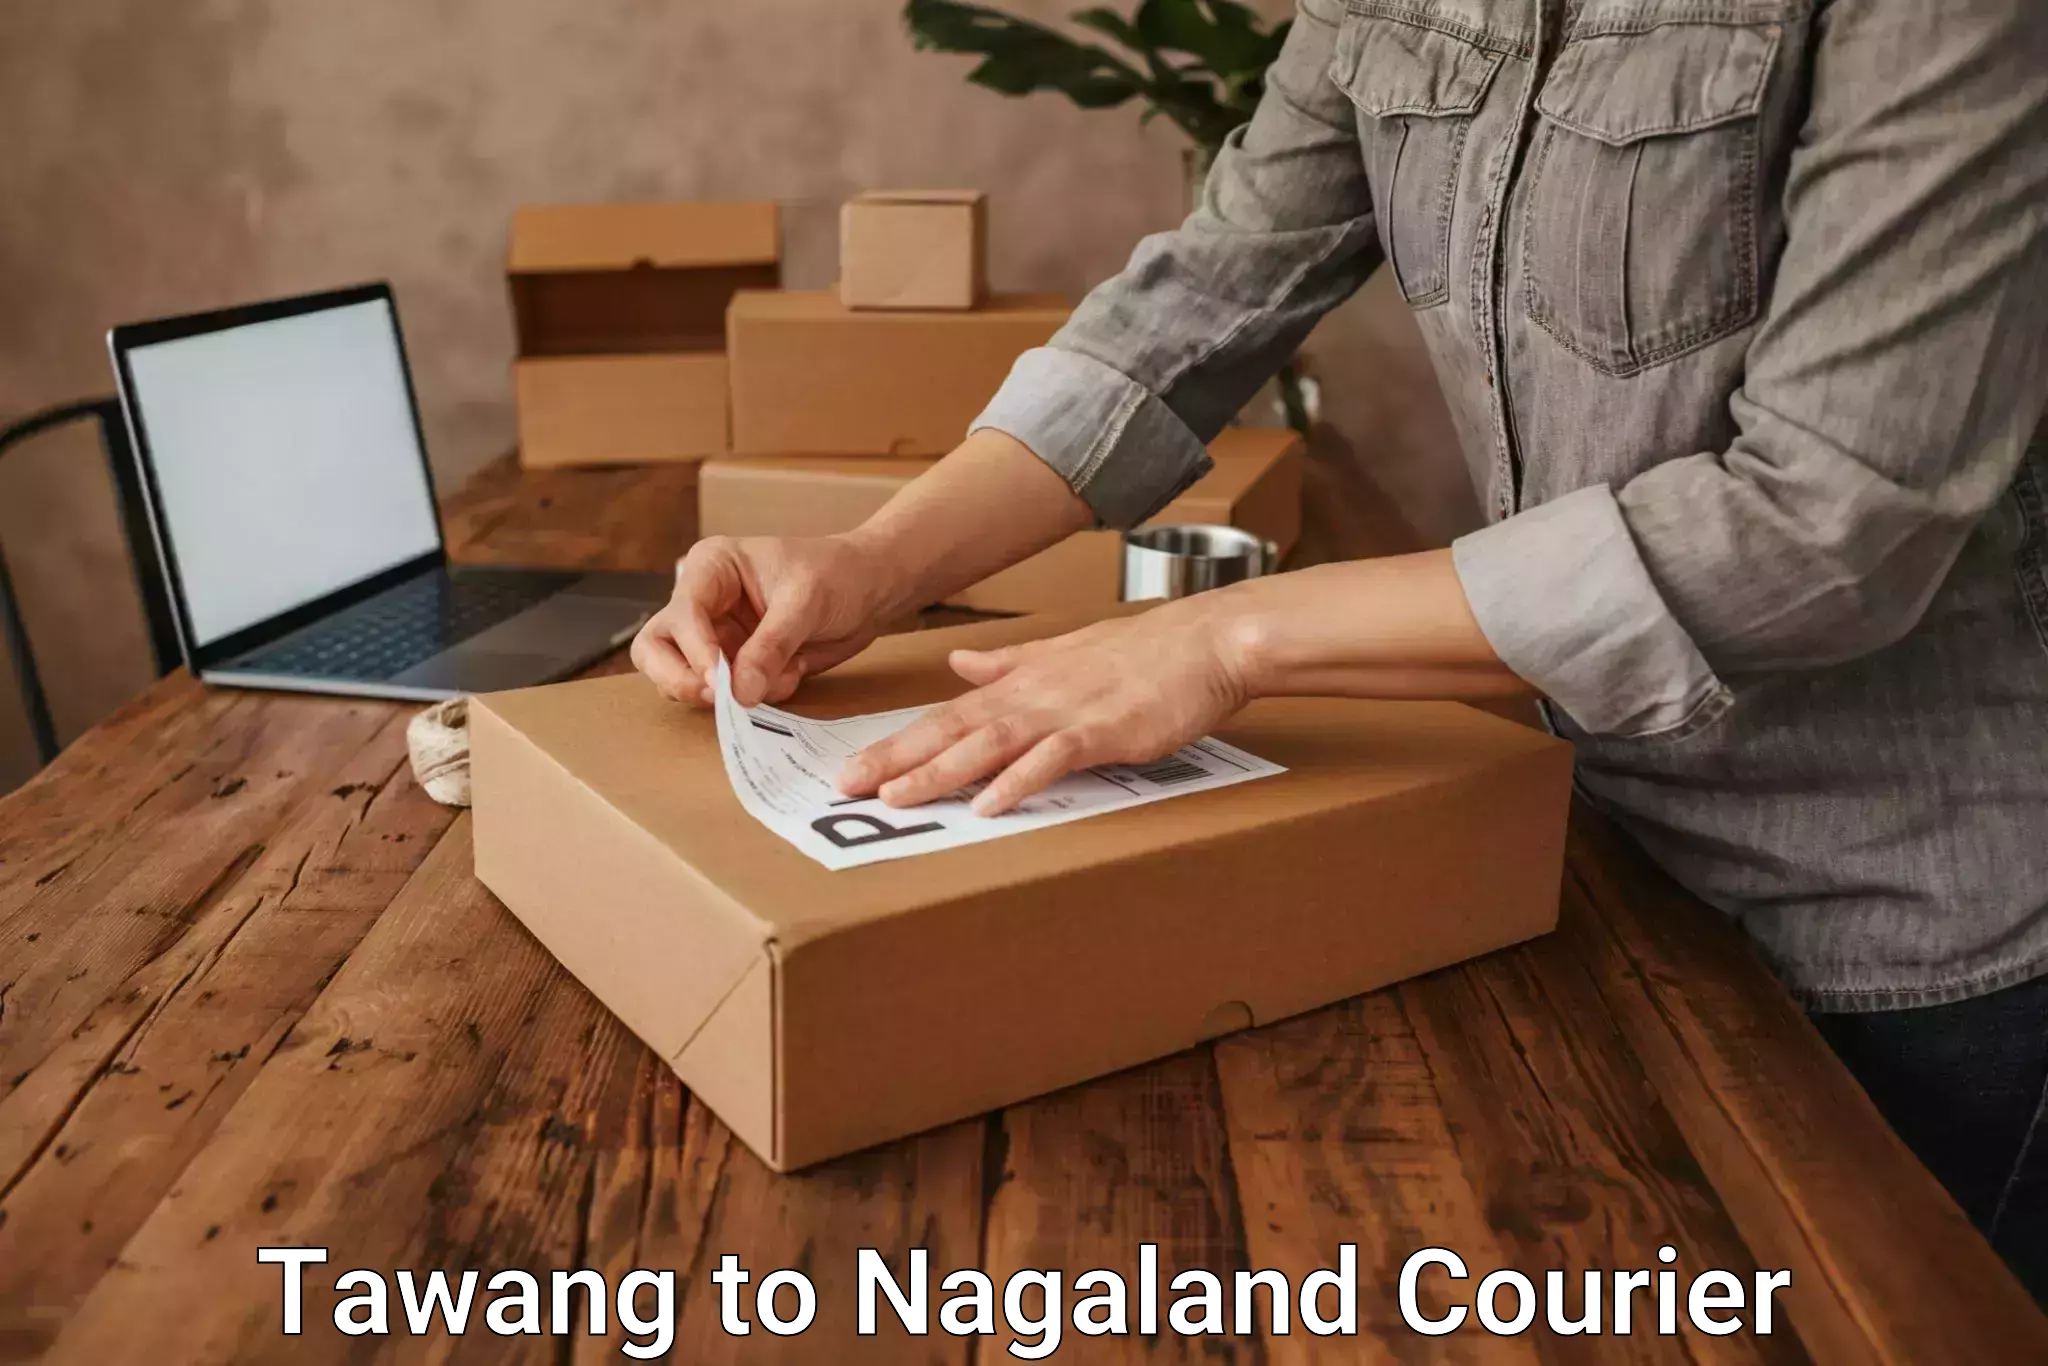 Individual parcel service Tawang to Nagaland